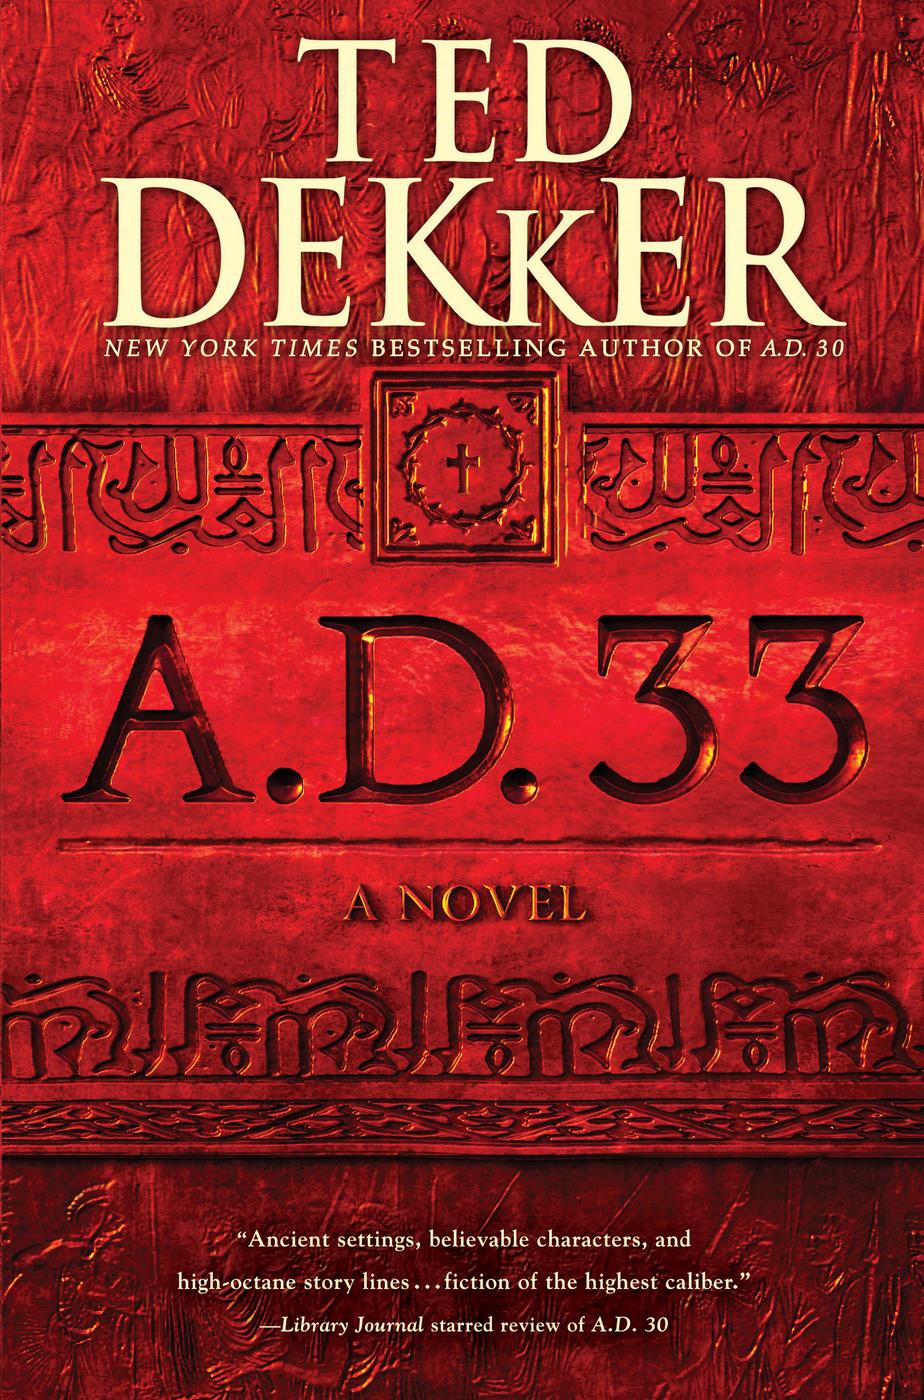 A.D. 33 (2015) by Ted Dekker